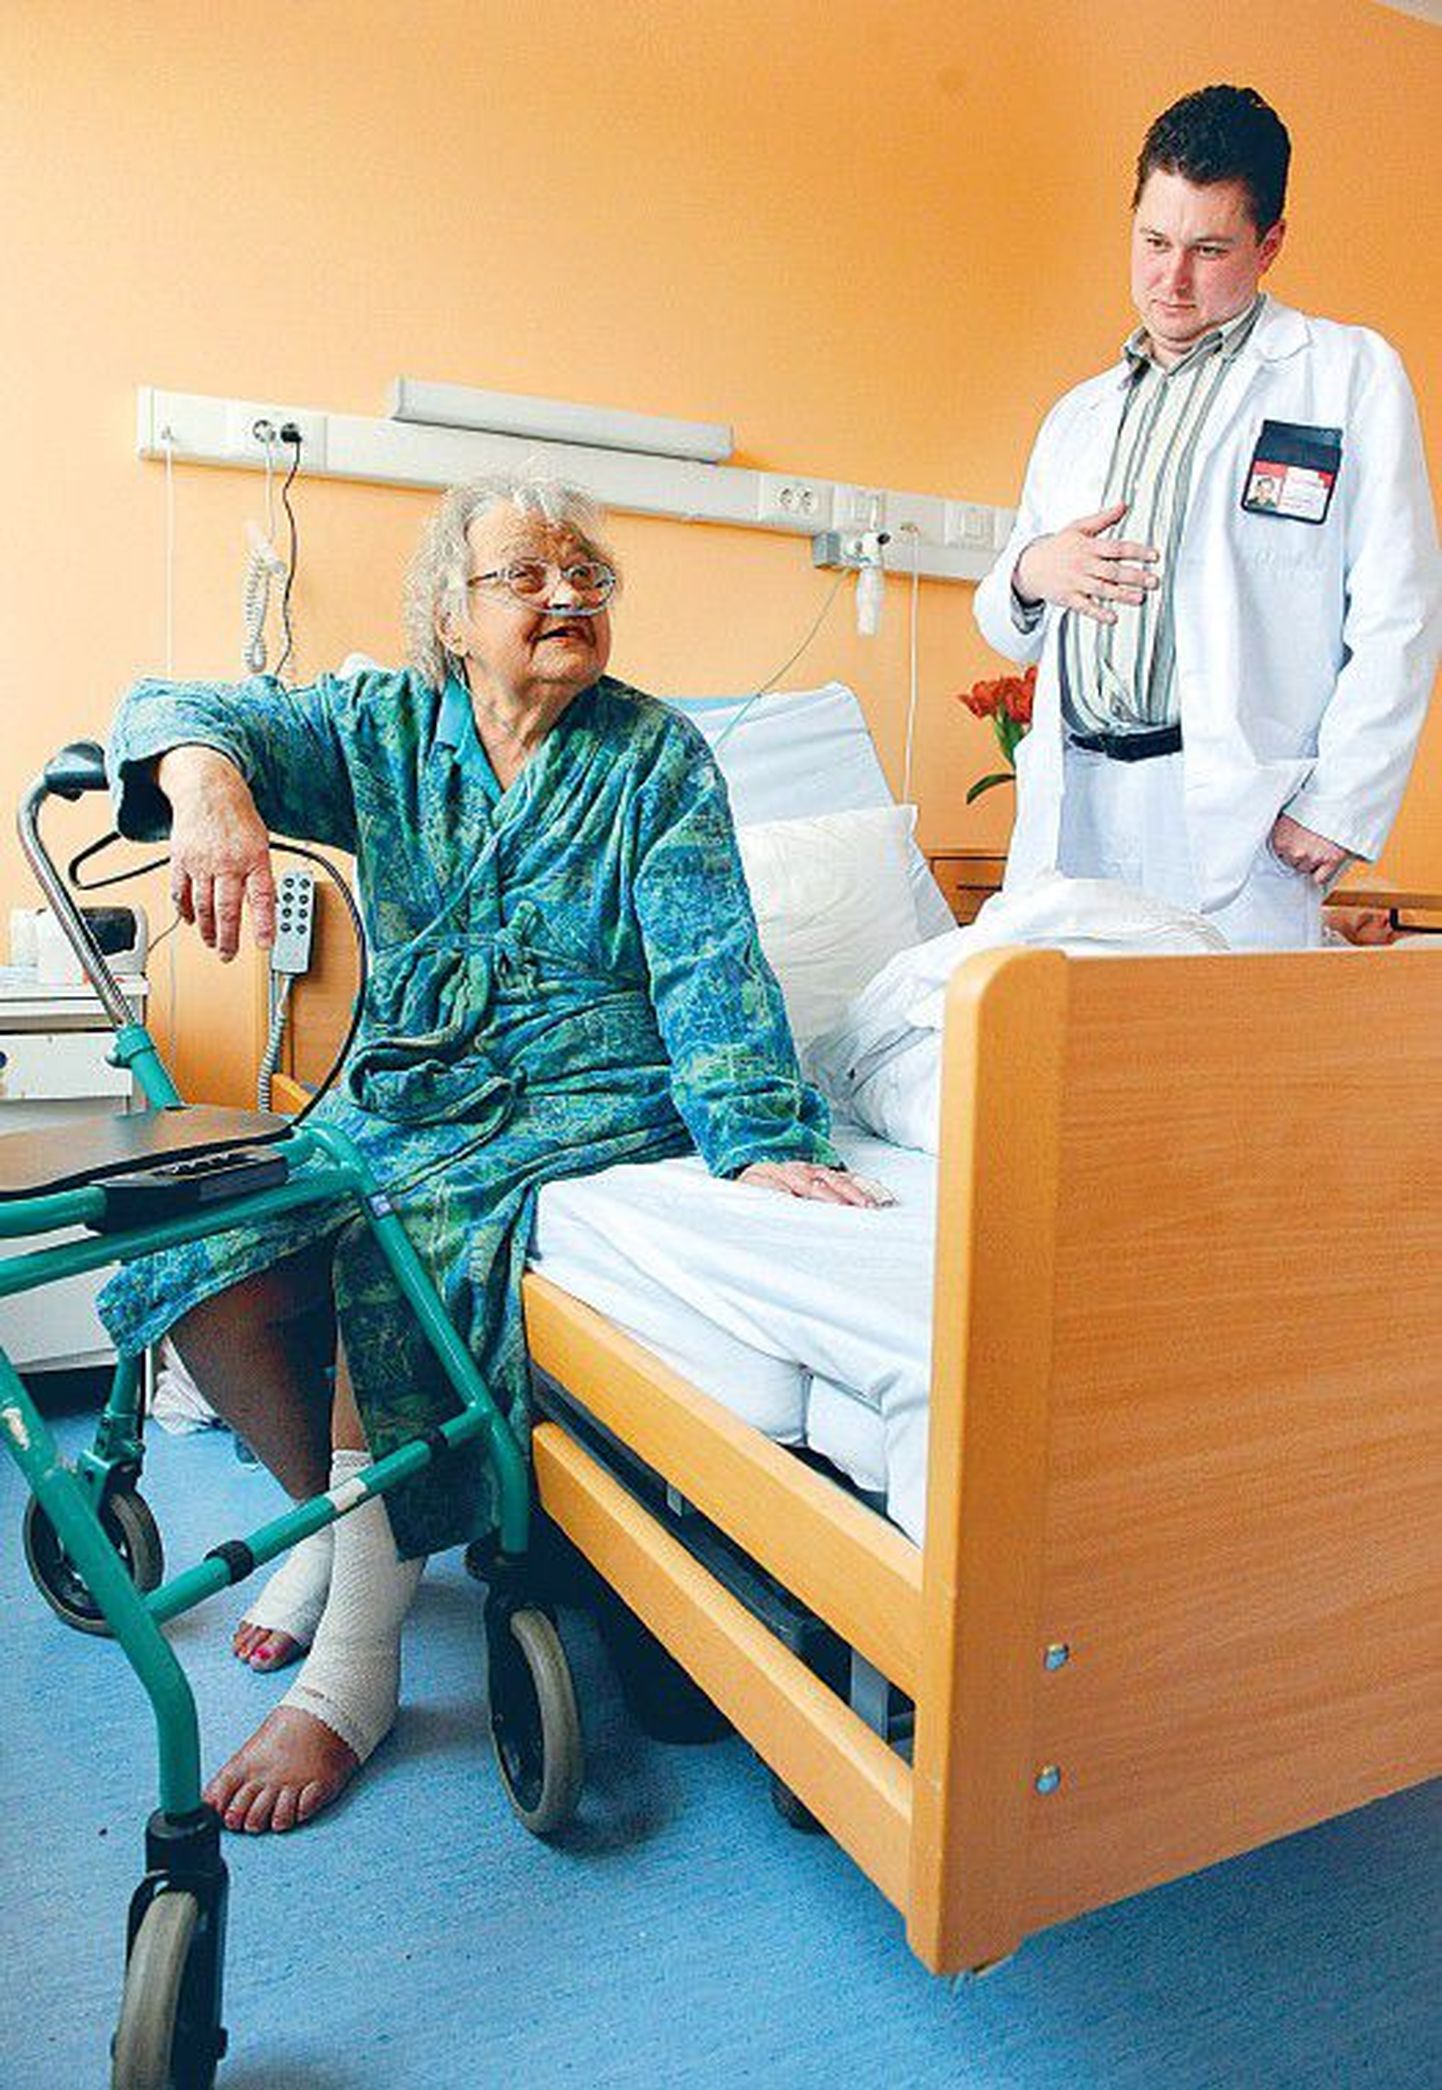 Руководитель Кейлаской больницы Aндрес Пери оценивает состояние здоровья 76-летней Лейды Труве, которой пришлось ждать места в больнице по уходу два с половиной месяца.